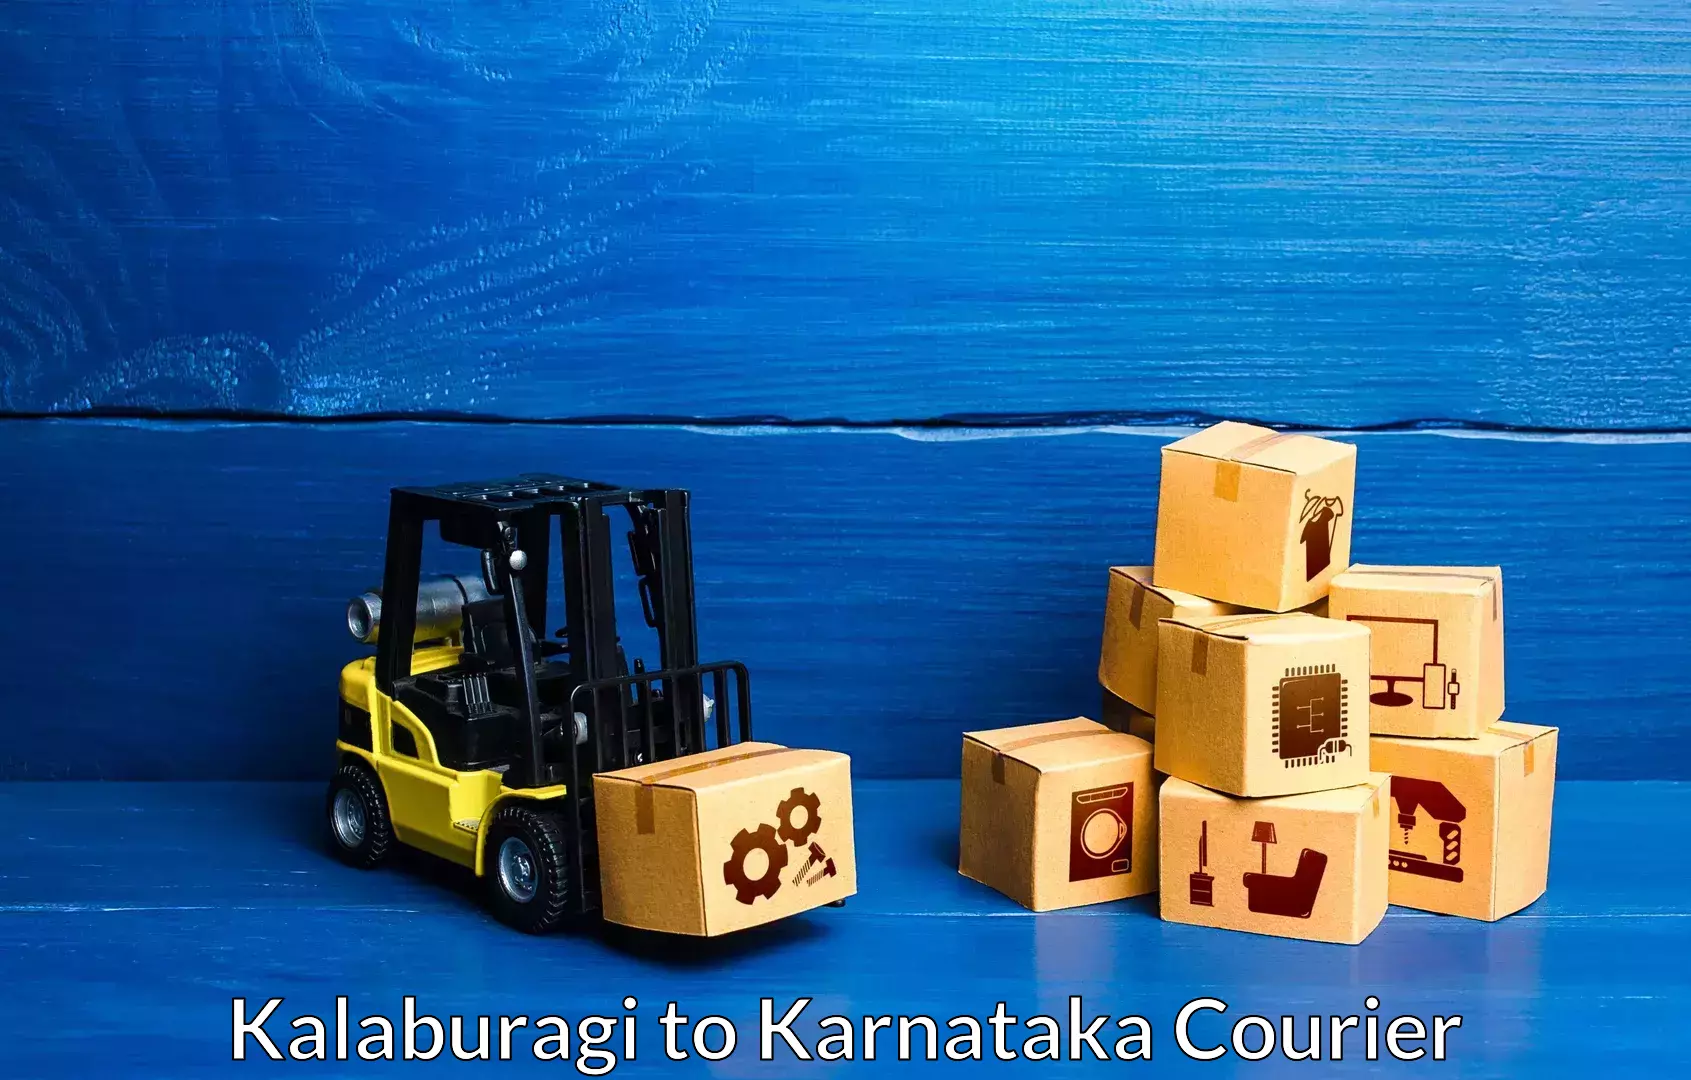 Skilled furniture transporters Kalaburagi to Karnataka